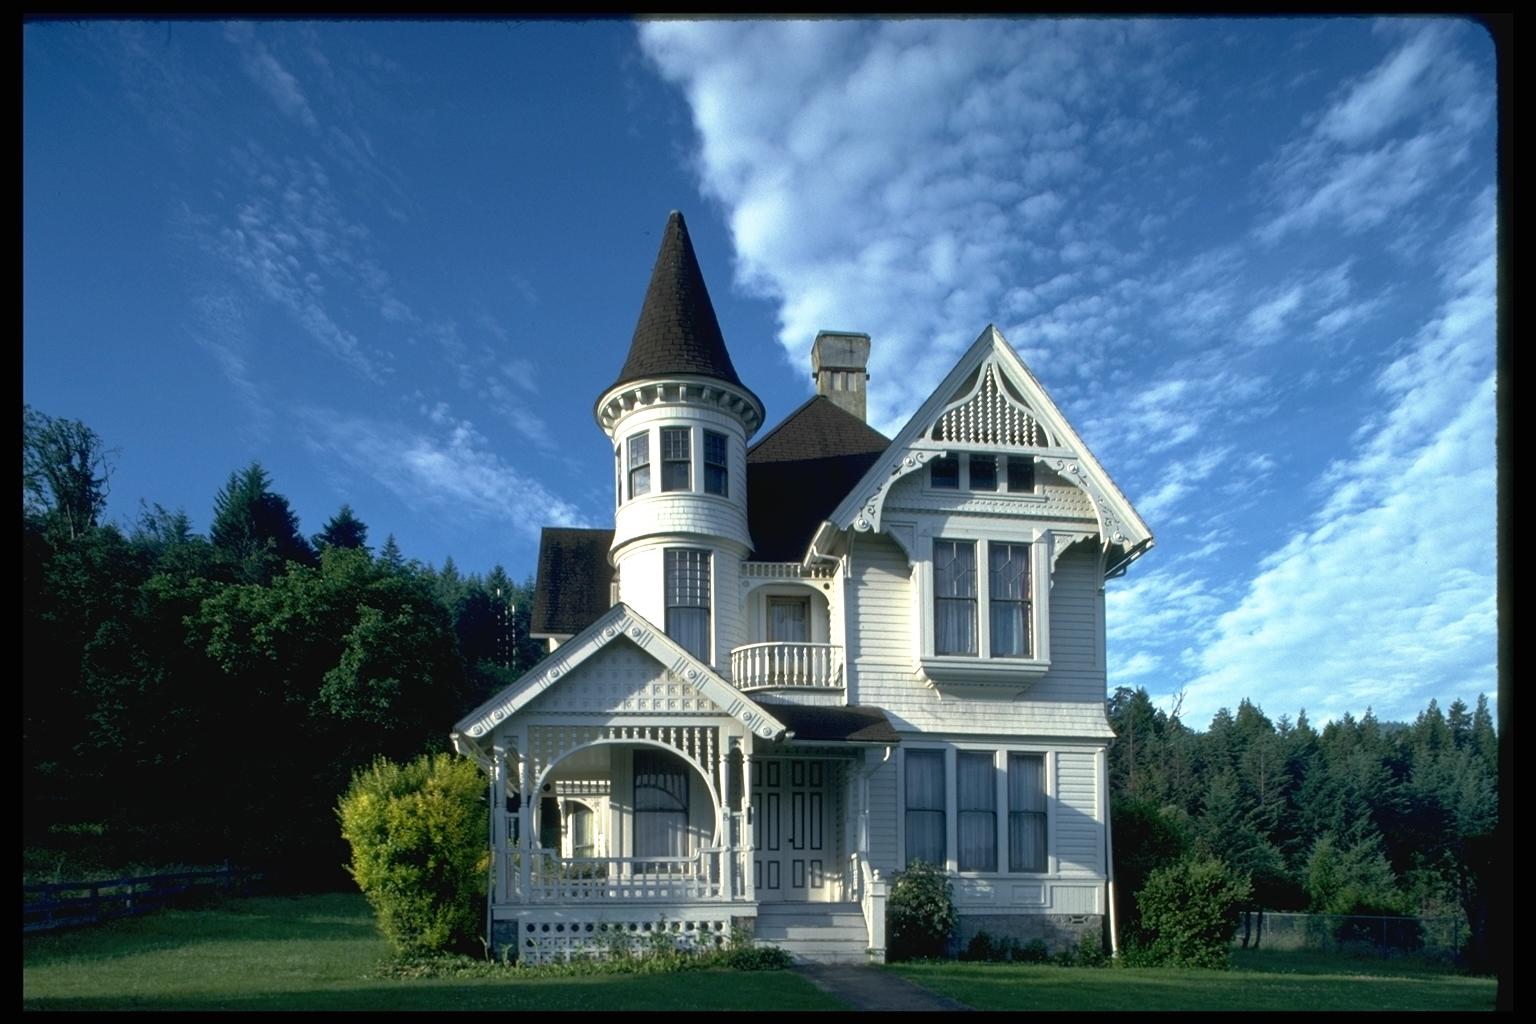 Дом в котором я хотел бы жить. Особняк в стиле Ампир с башенками. Коттедж с башенкой в викторианском стиле. Красивый домик. Красивые коттеджи.